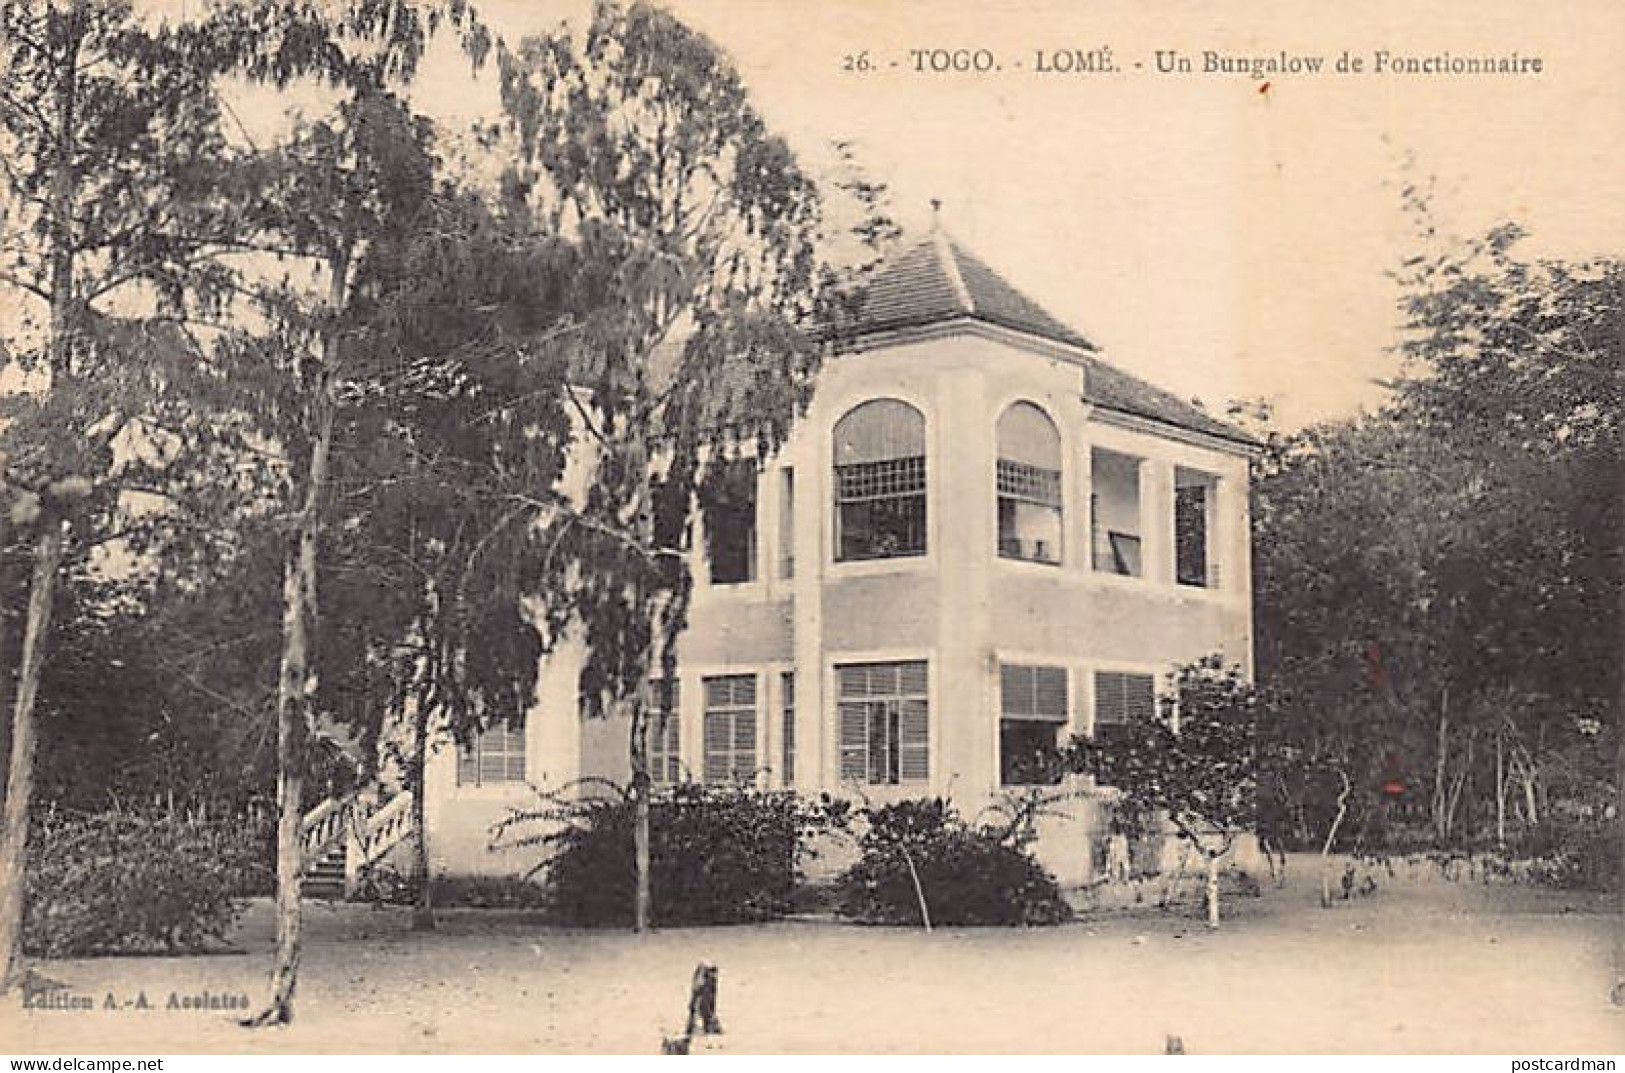 Togo - LOMÉ - Un Bungalow De Fonctionnaire - Ed. A.-A. Acolatsé 26 - Togo